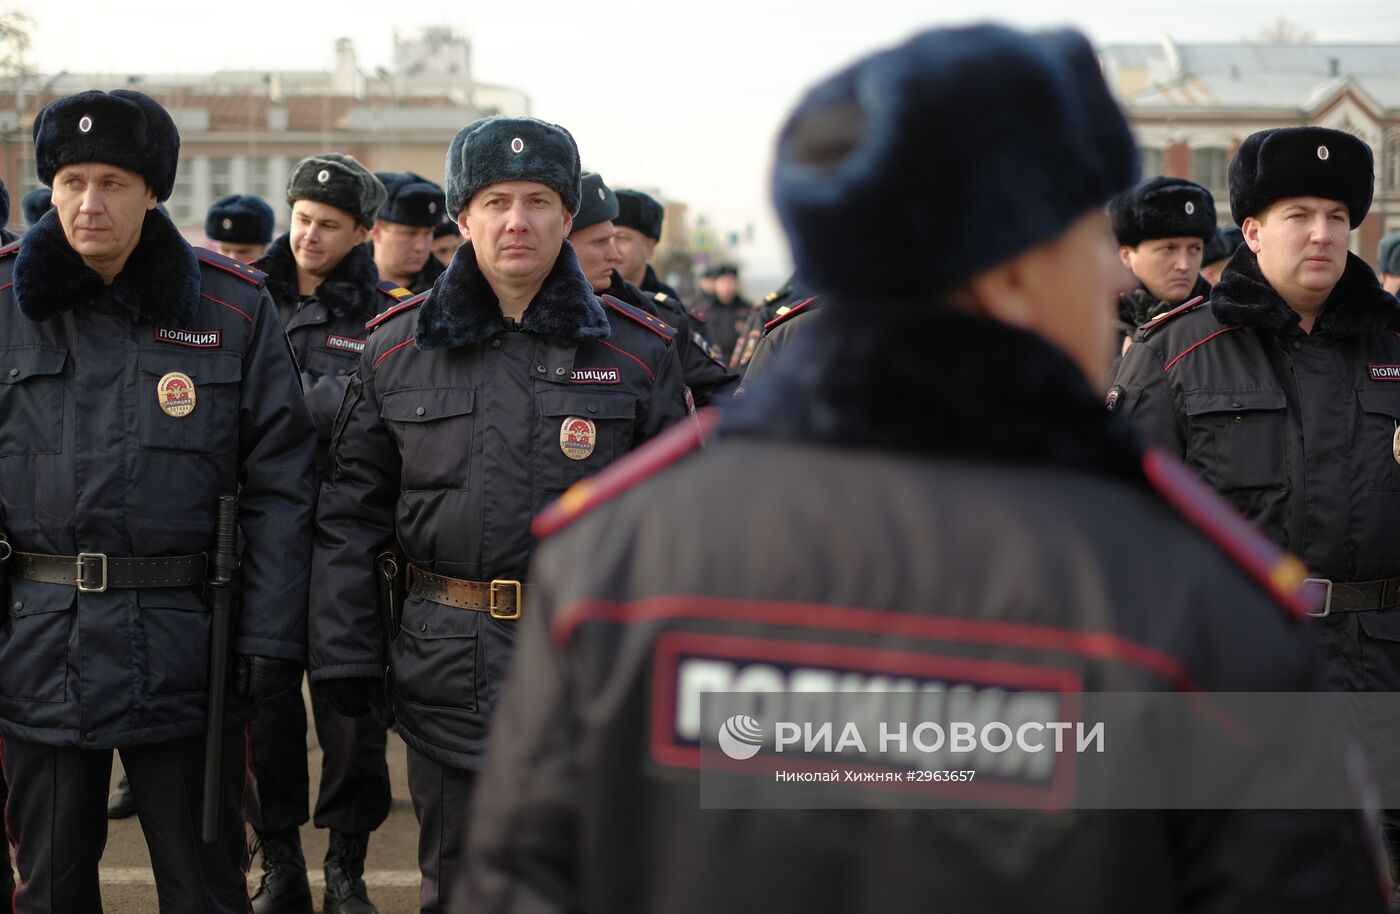 Ежегодный торжественный смотр полиции на площади Куйбышева в Самаре